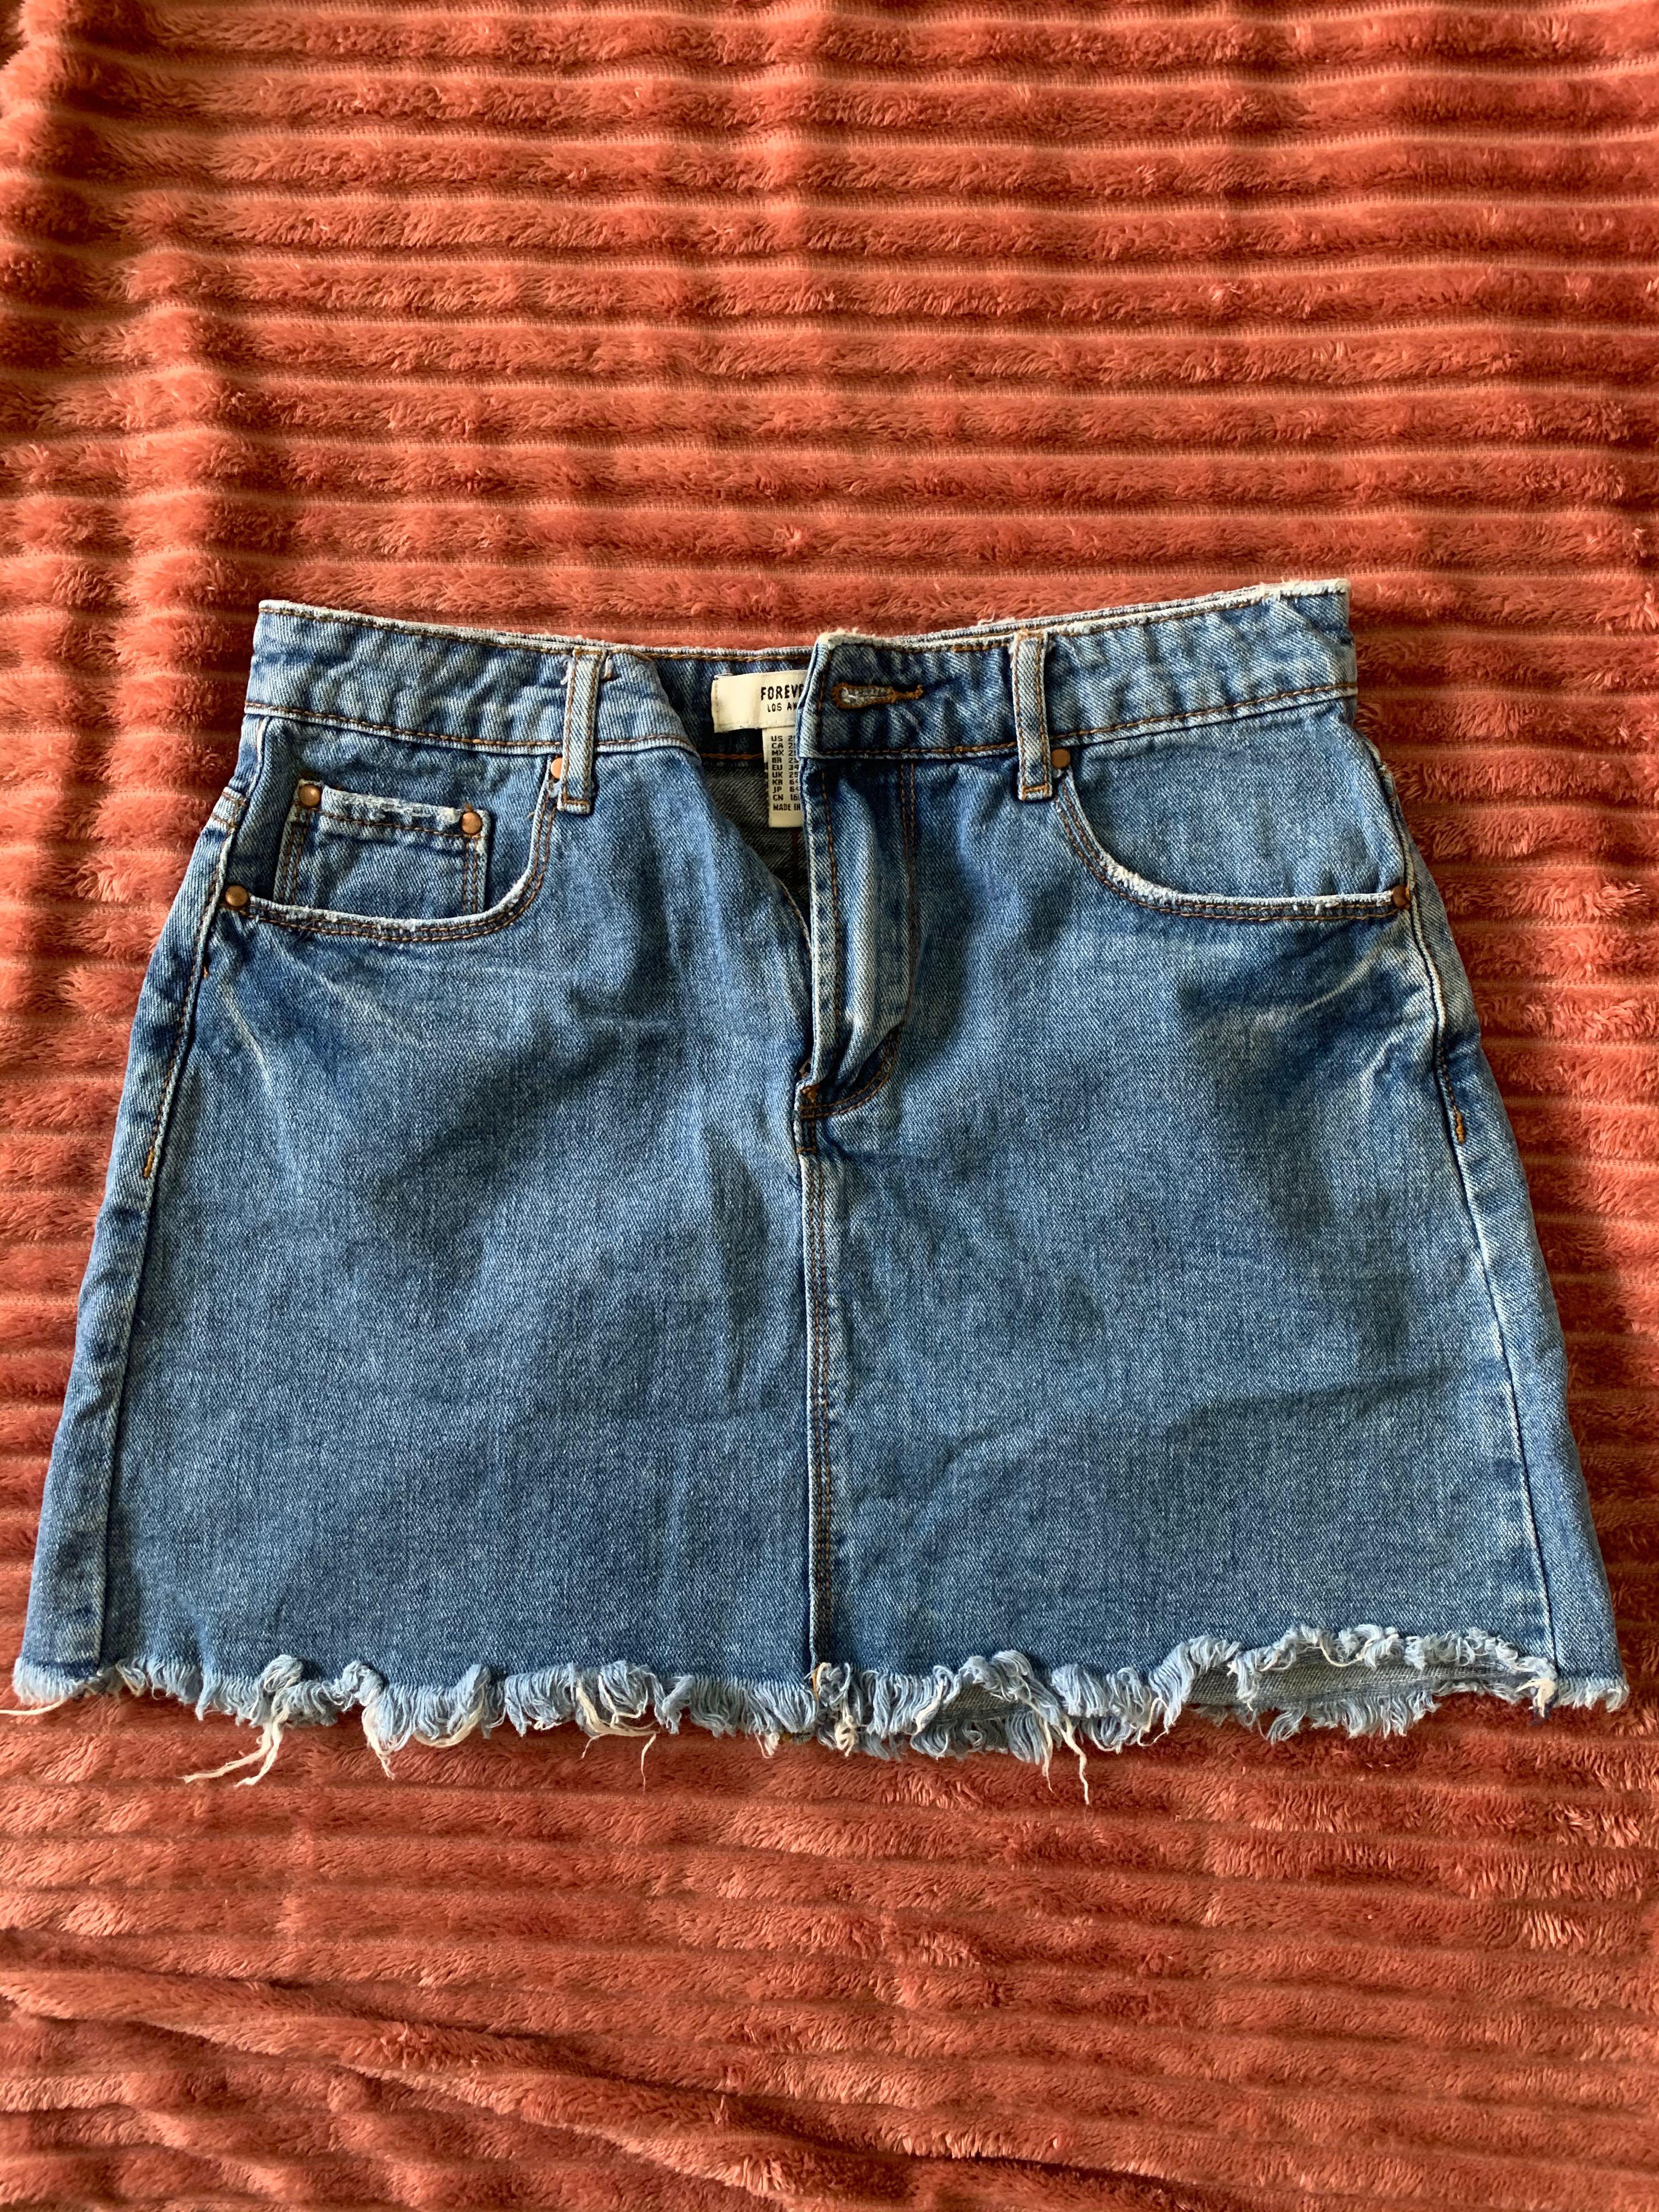 forever 21 jeans skirt